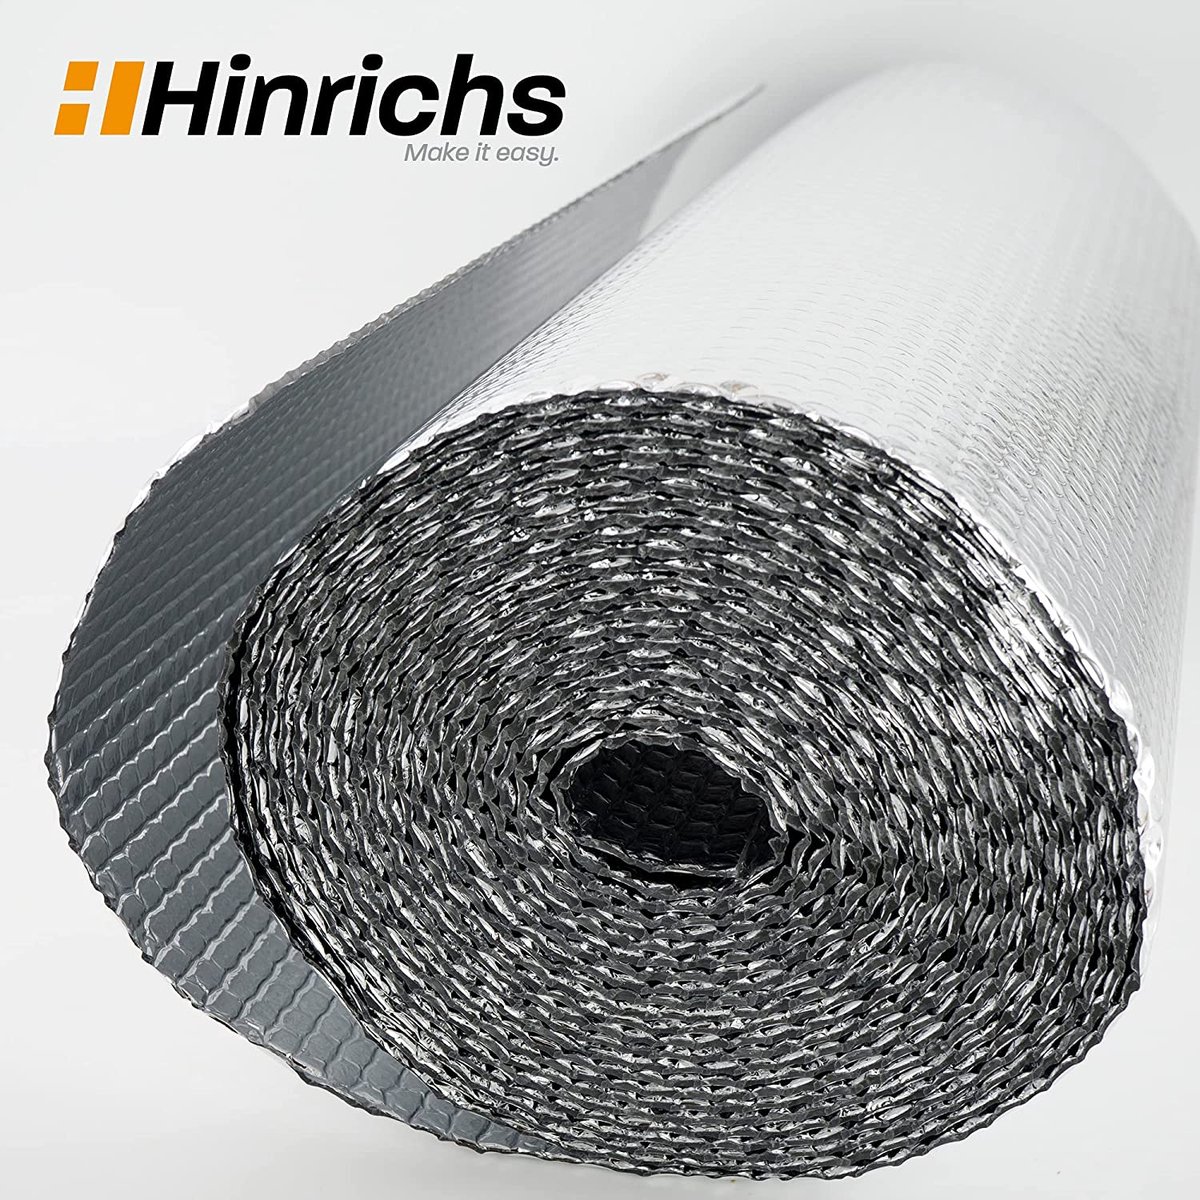 Hinrichs Isolatiefolie 10 mx 60 cm - Thermische folie voor ramen, auto's, camping of zwembad - Perfect als warmte-isolatie, koudebescherming en verduistering